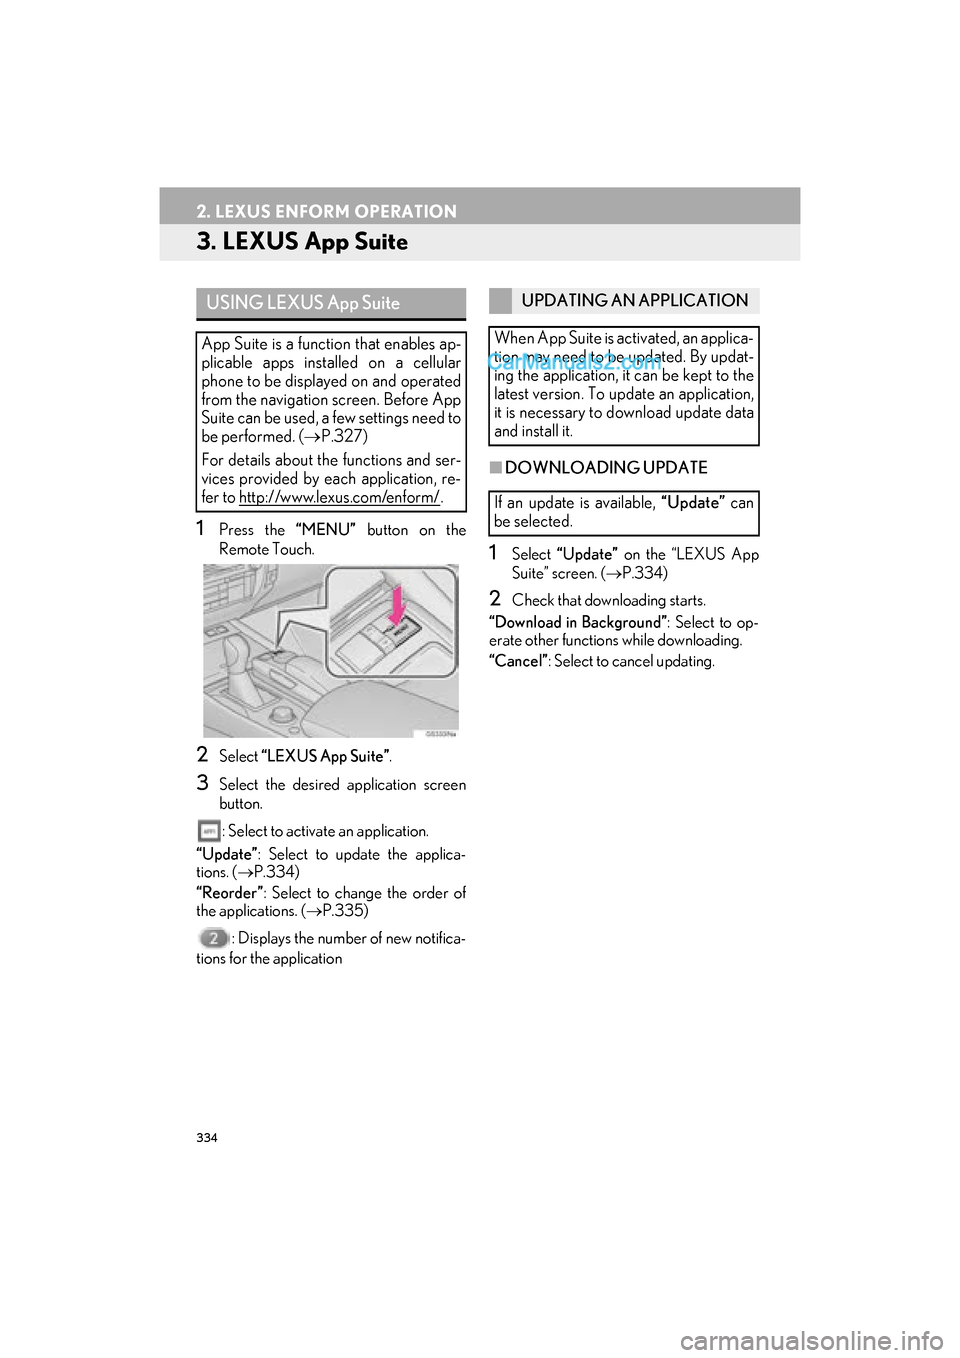 Lexus GS F 2016  Navigation Manual 334
2. LEXUS ENFORM OPERATION
GS_Navi+MM_OM30F12U_(U)15.09.01     12:22
3. LEXUS App Suite
1Press the “MENU” button on the
Remote Touch.
2Select  “LEXUS App Suite” .
3Select the desired applic